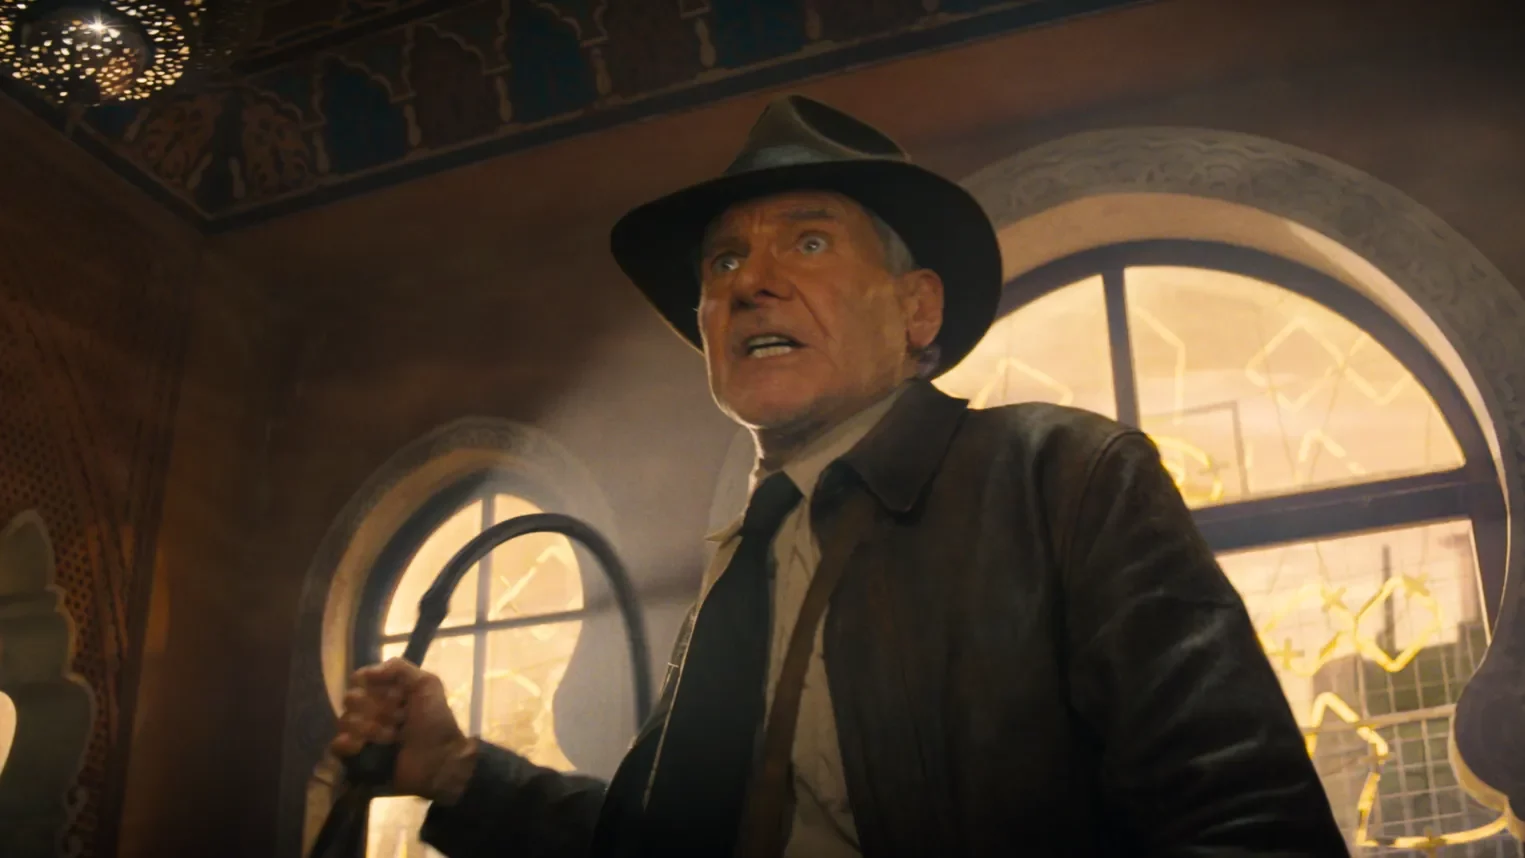 Màn cầm roi quất tới quất lui huyền thoại trong loạt phim về Indiana Jones